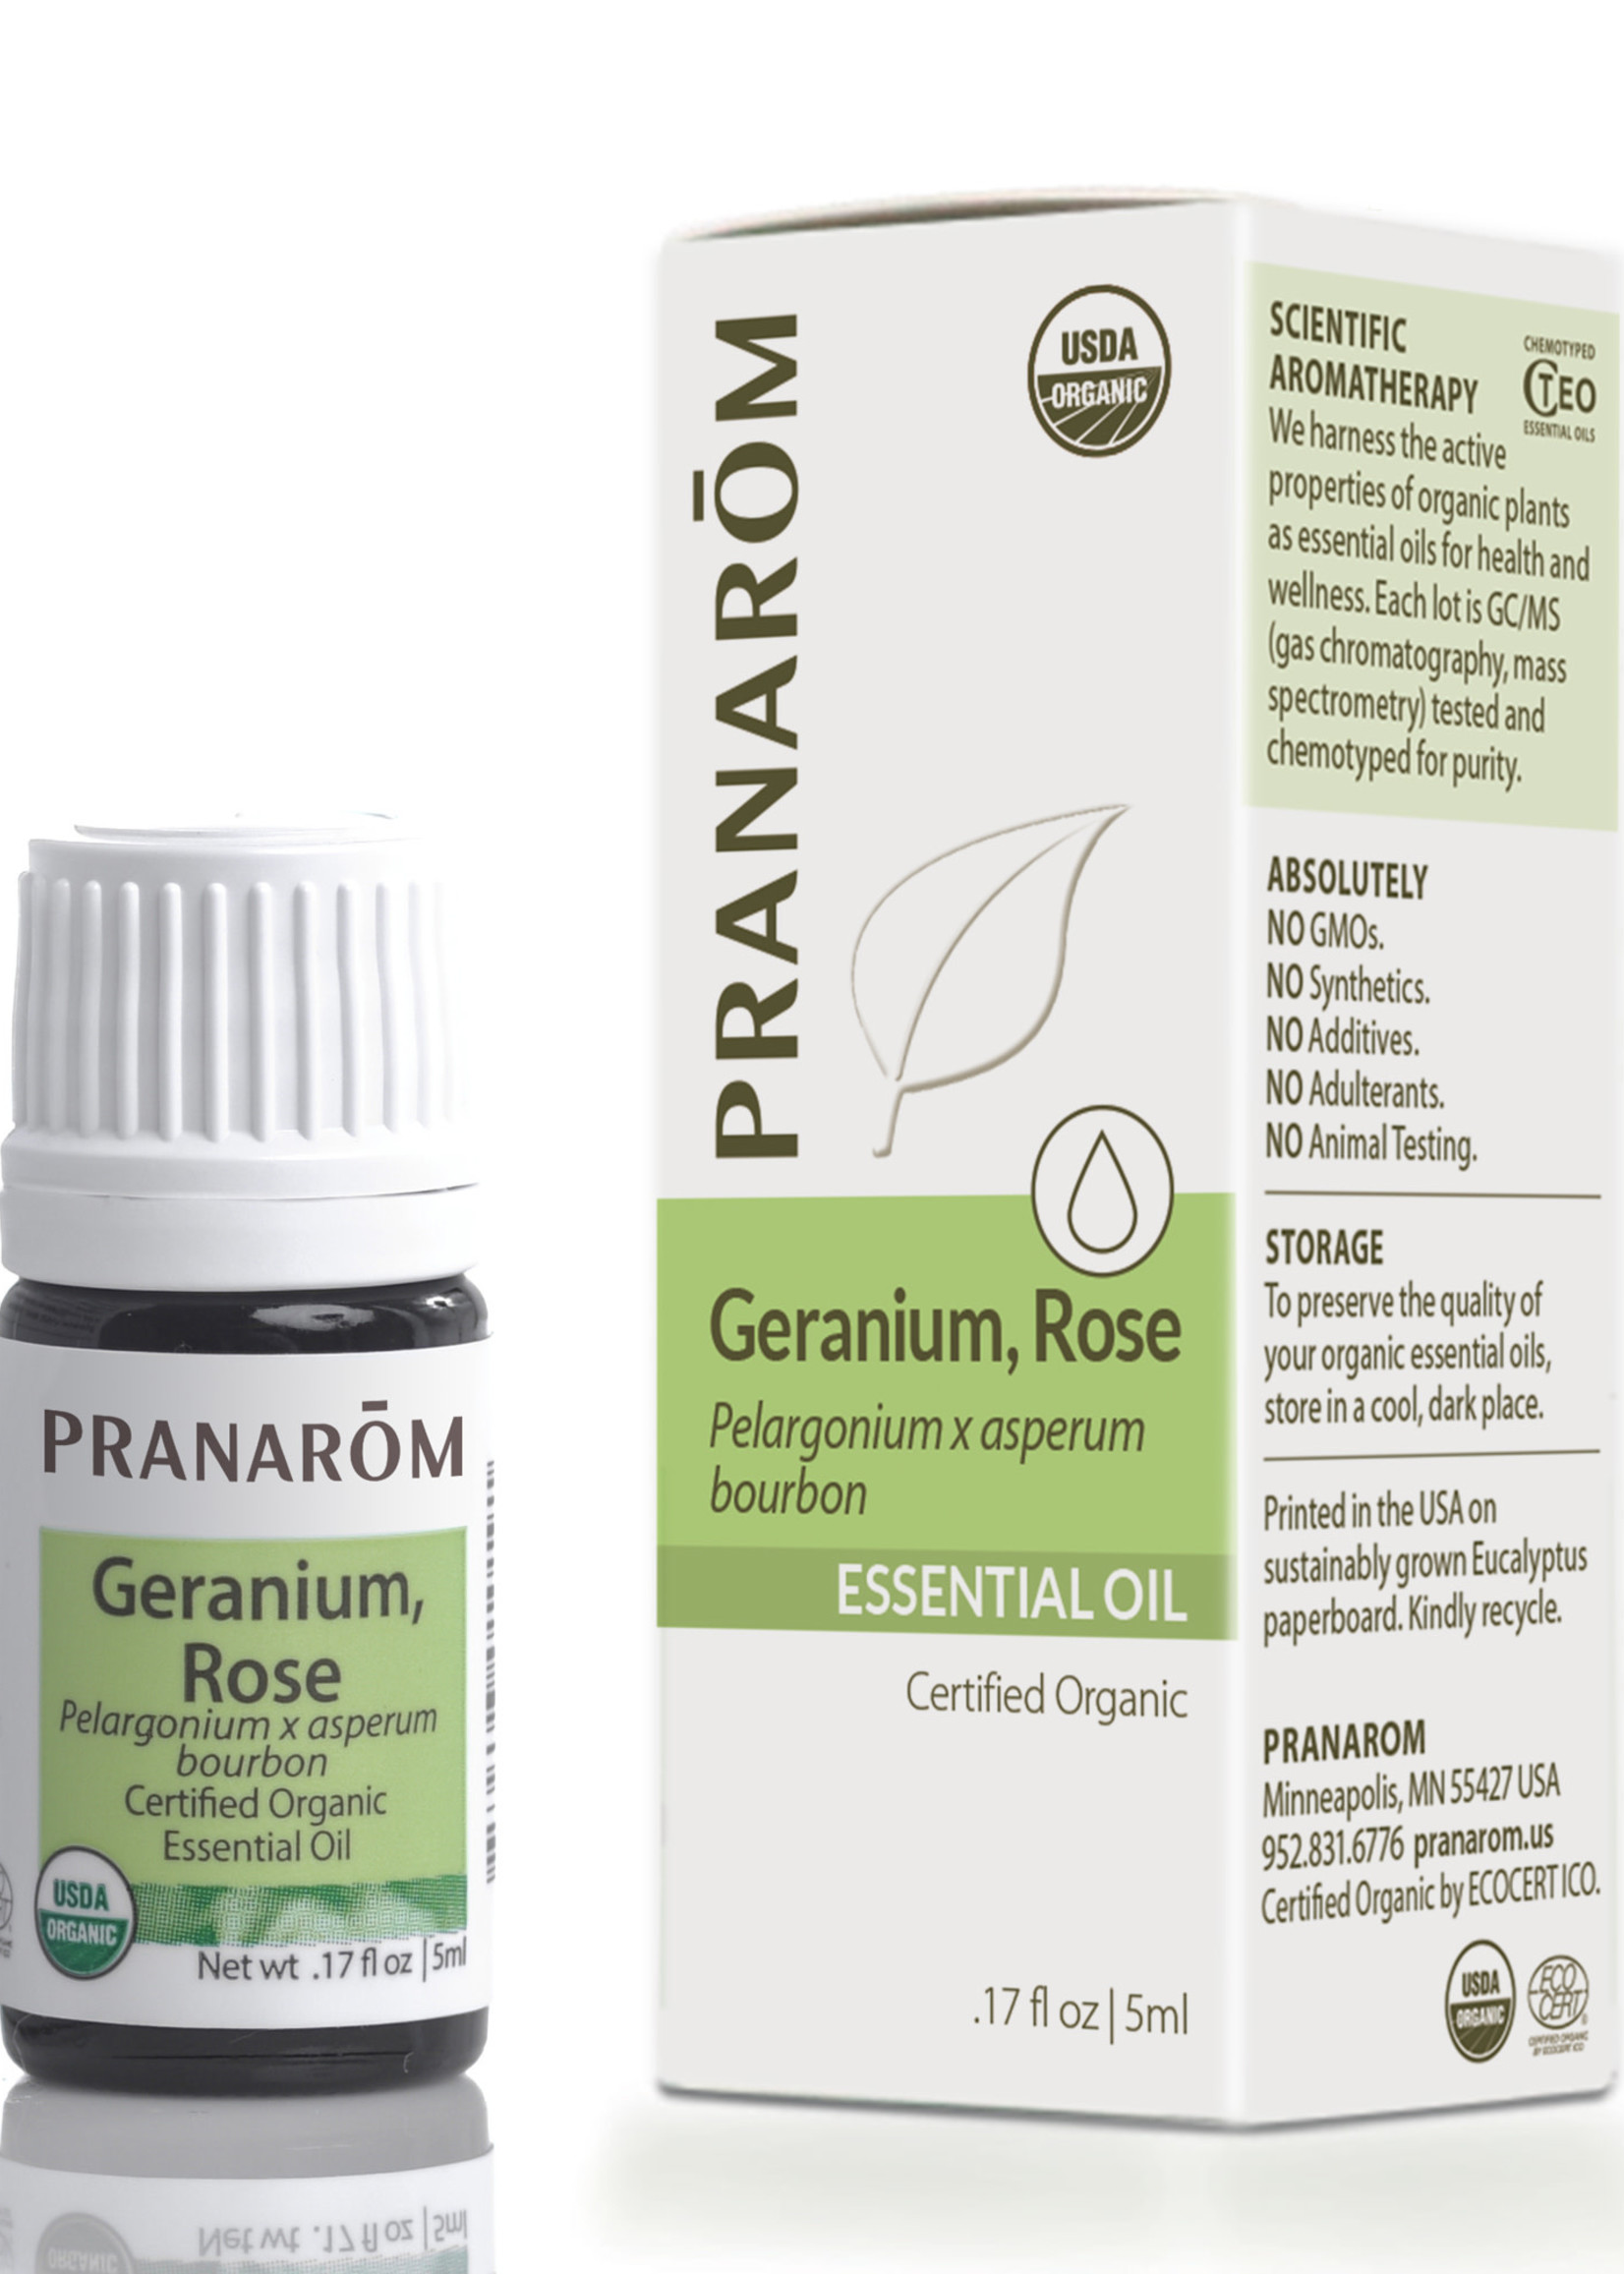 Pranoram Geranium, Rose 5ml (Pelargonium x asperum bourbo)